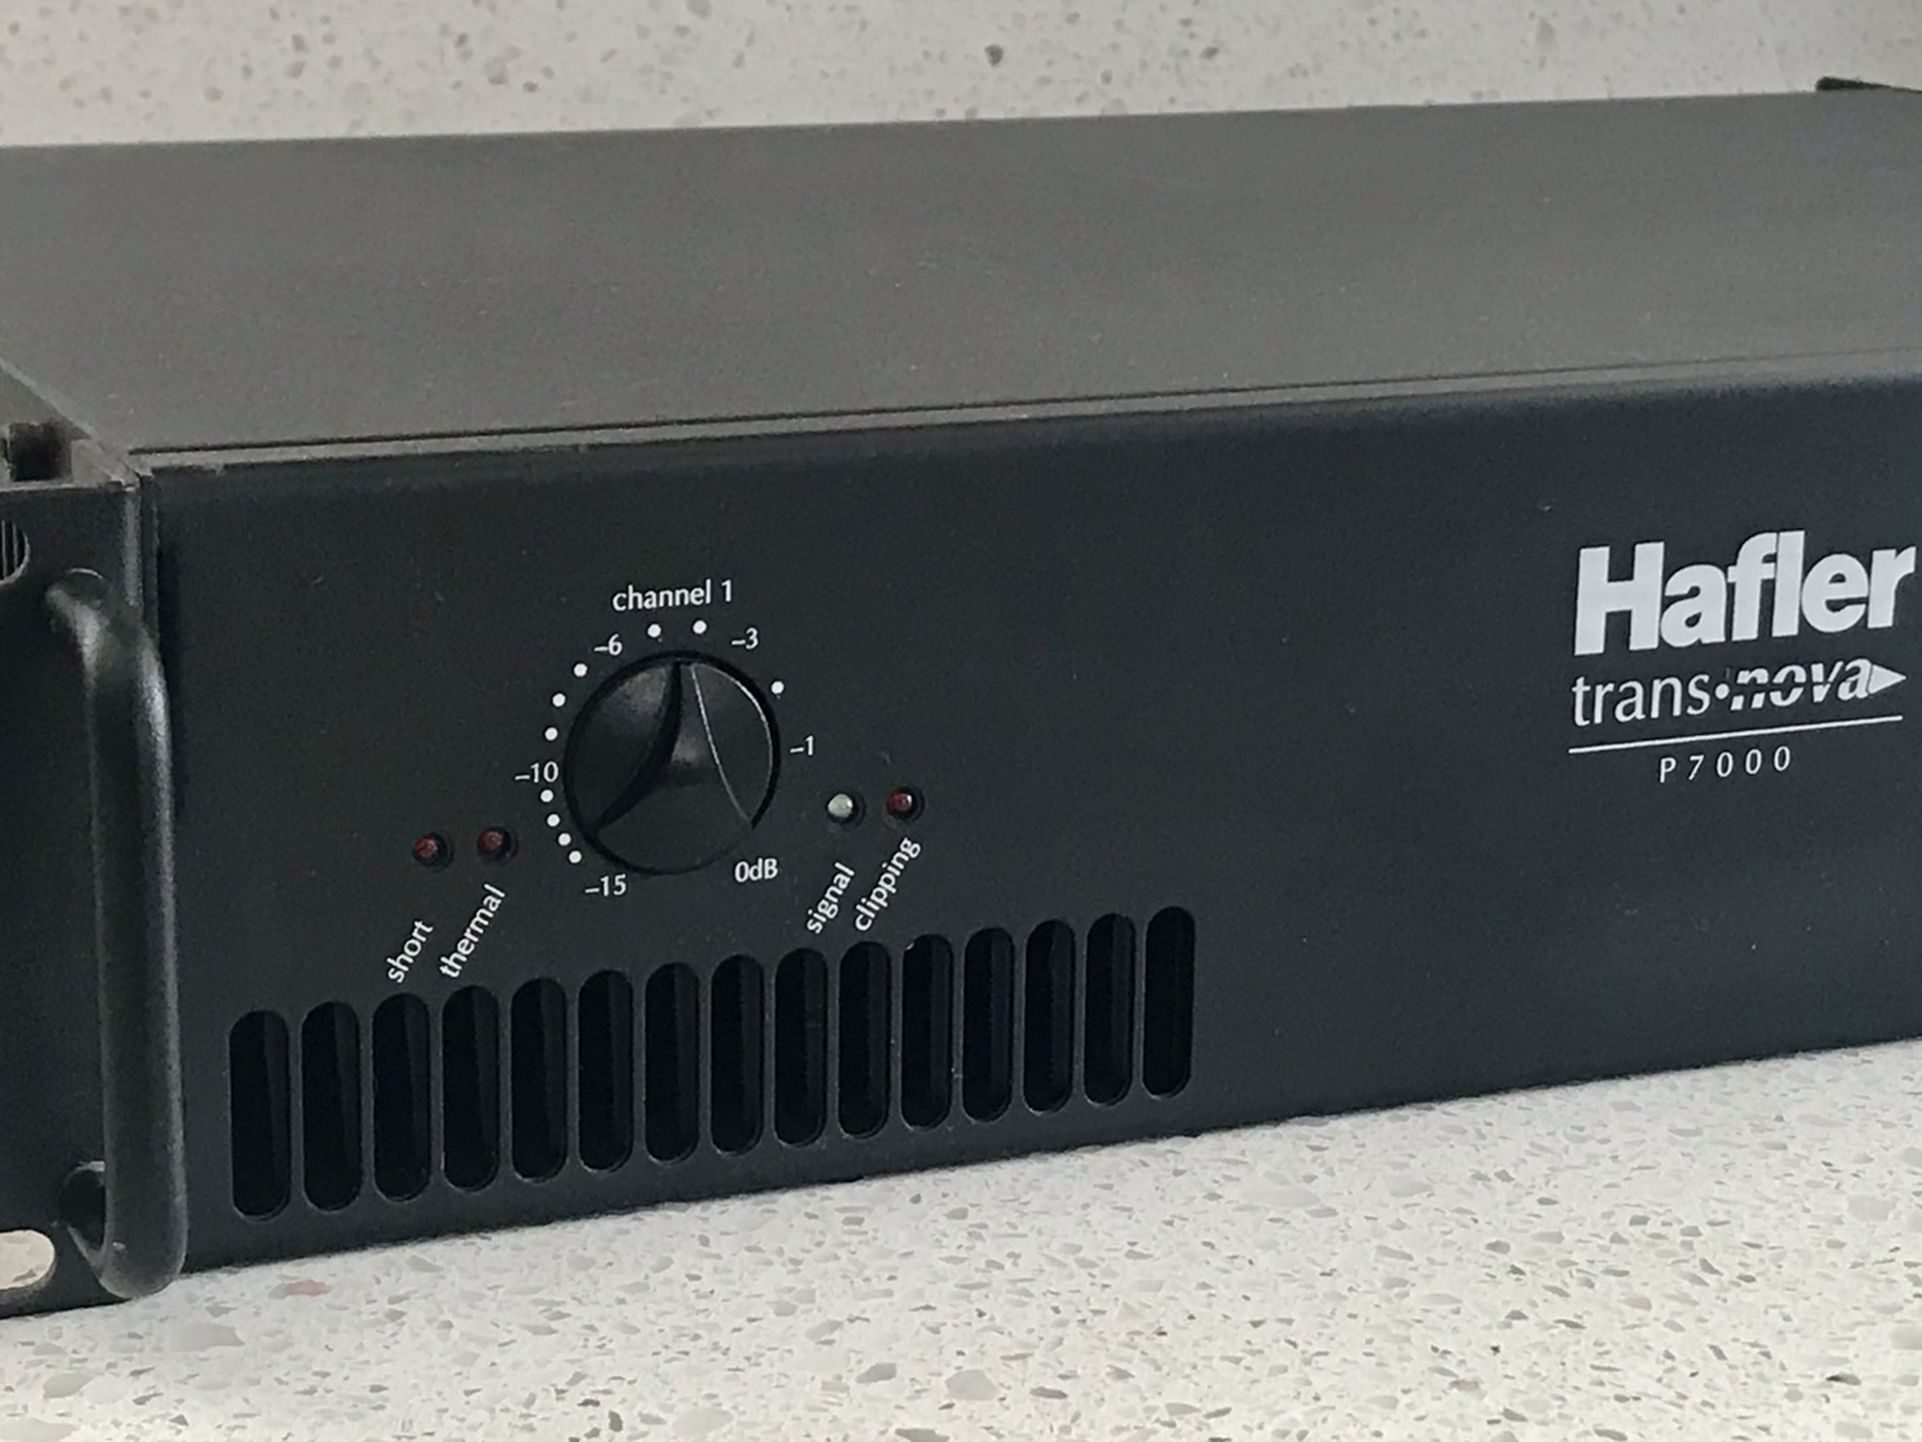 Hafler Stereo Amplifier